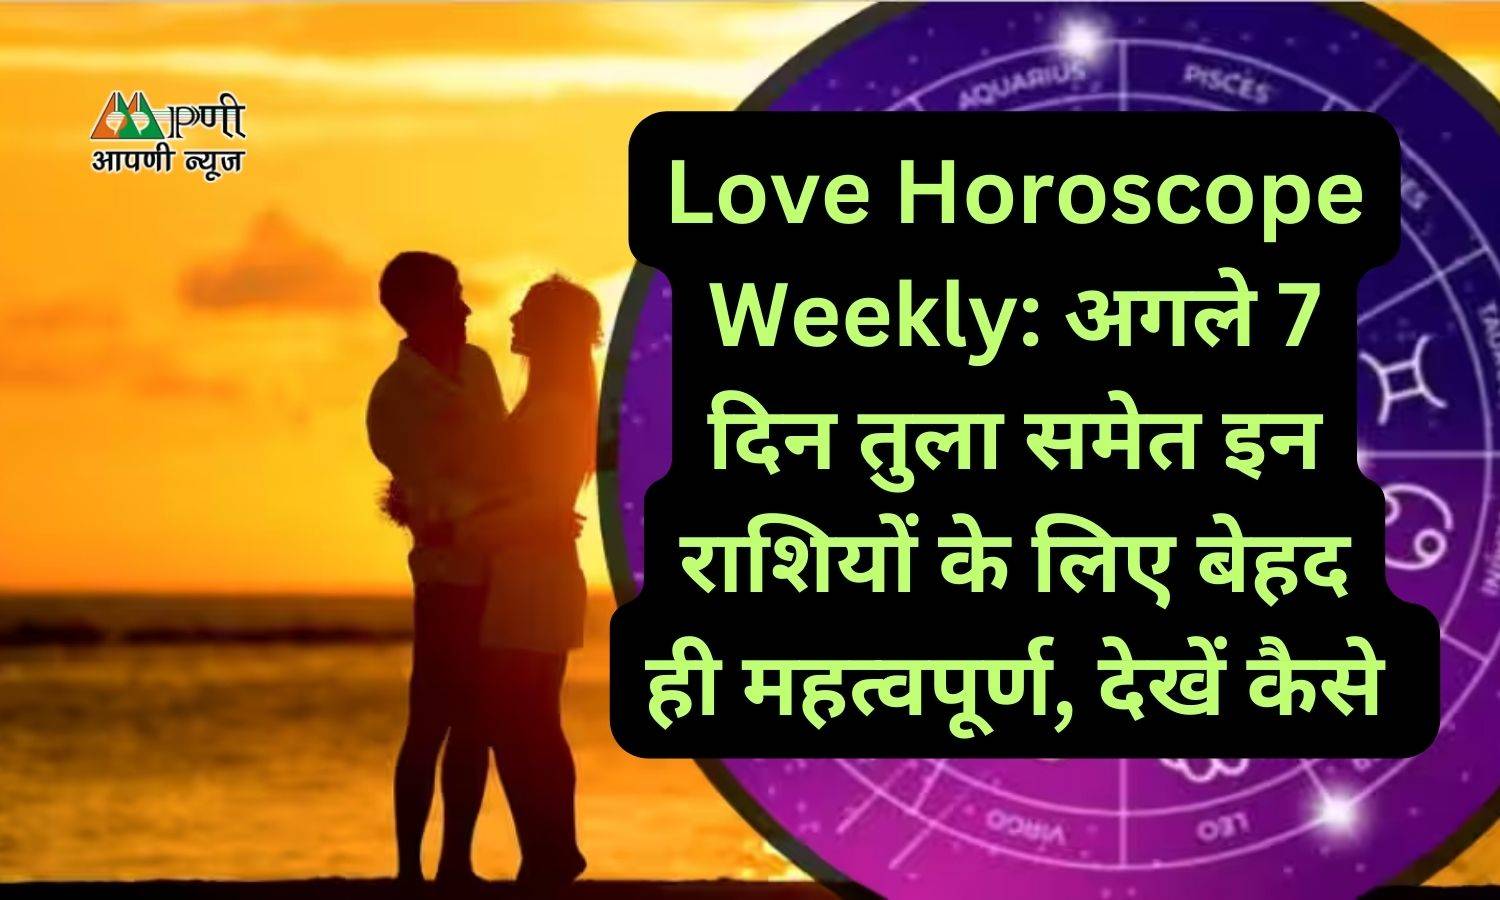 Love Horoscope Weekly: अगले 7 दिन तुला समेत इन राशियों के लिए बेहद ही महत्वपूर्ण, देखें कैसे